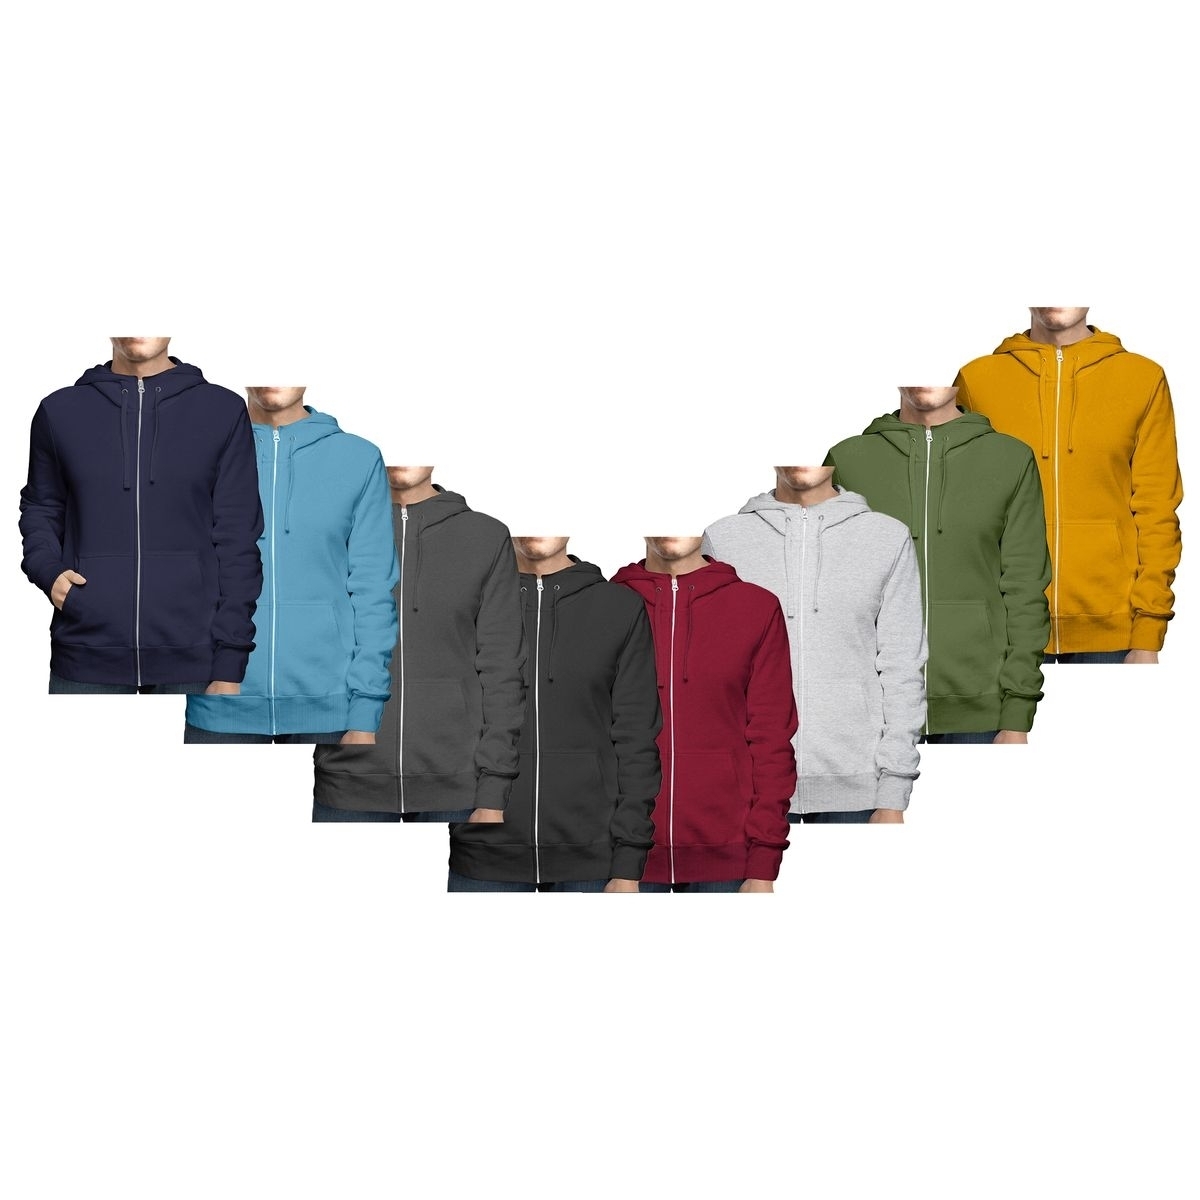 Men's Winter Warm Cozy Full Zip-Up Fleece Lined Soft Hoodie Sweatshirt - Navy, Small